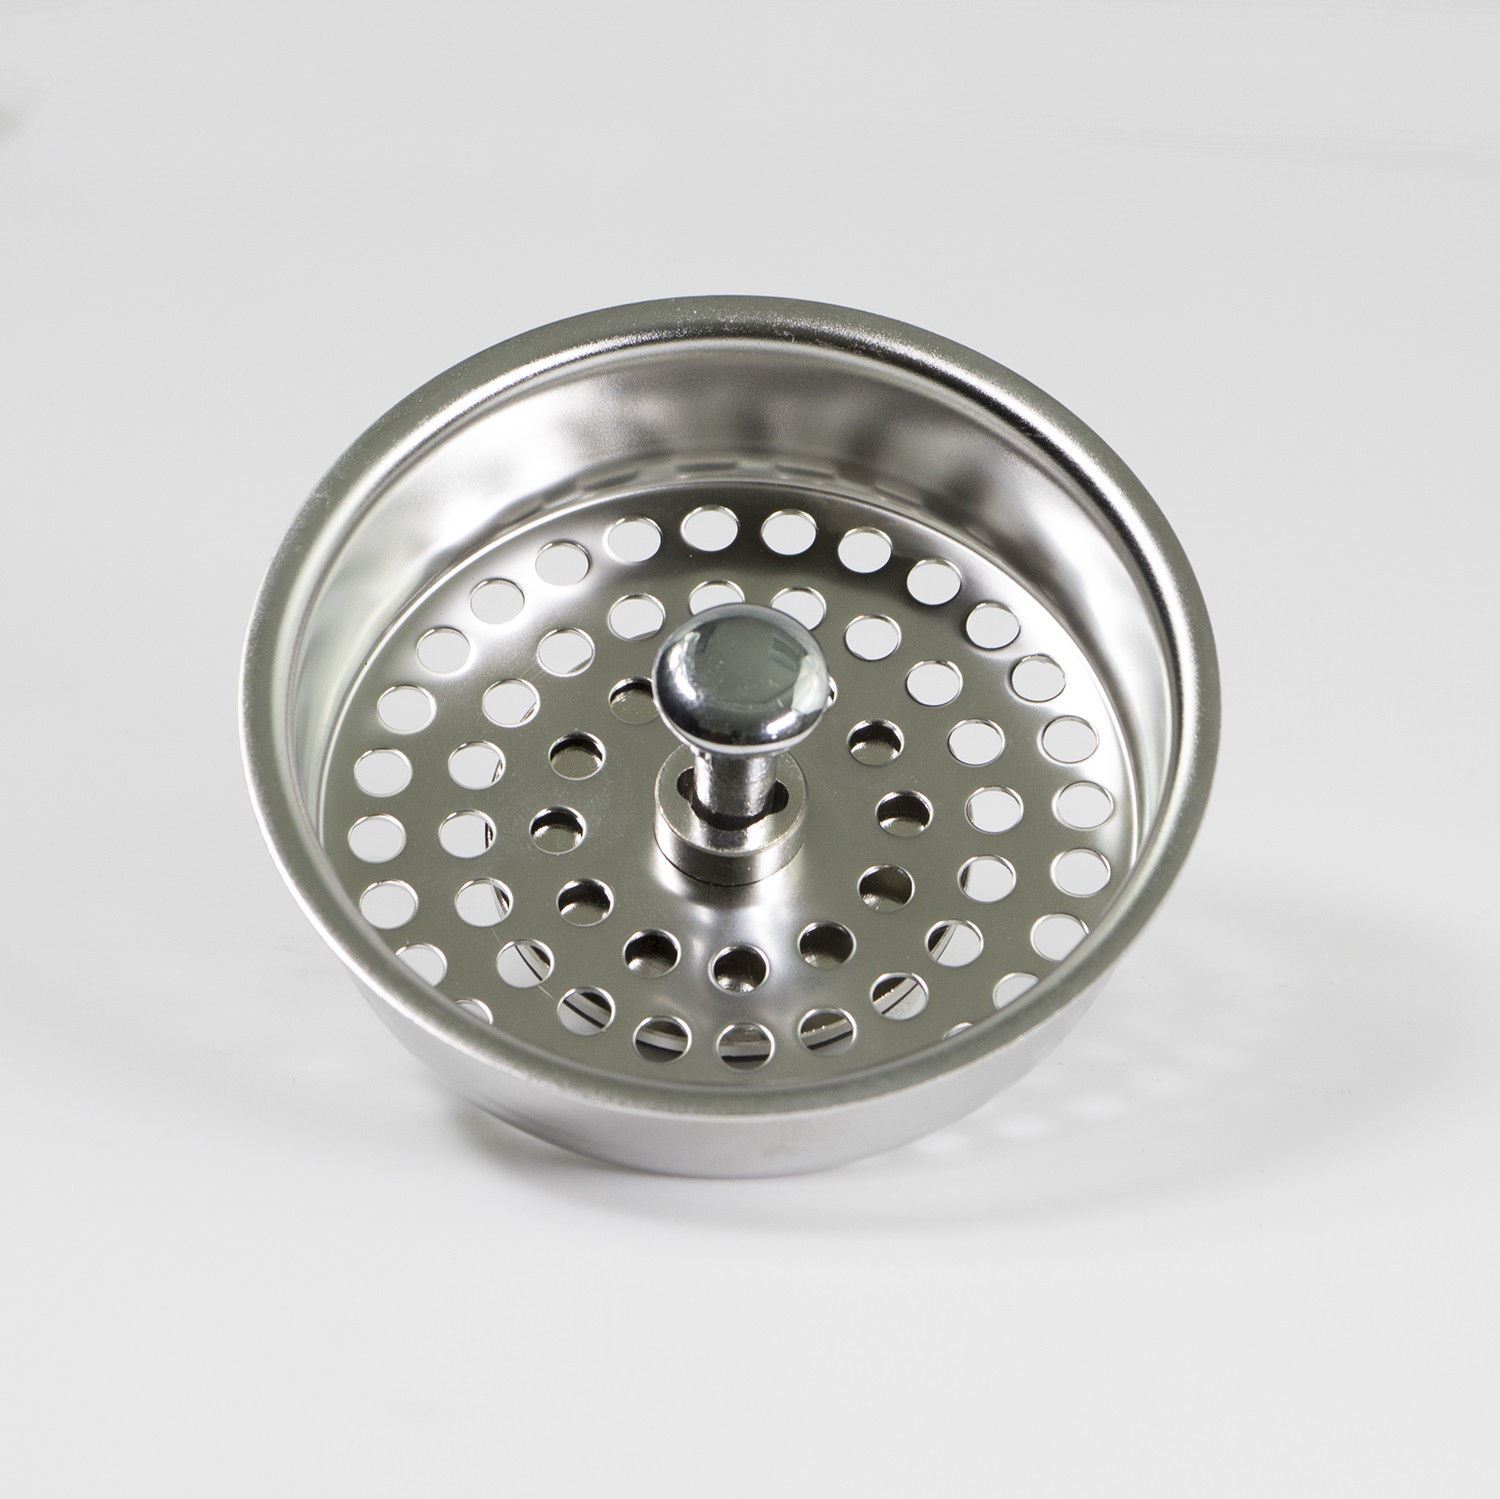 KOHLER Style Kitchen Sink 3.5" Stainless Steel Basket Strainer / Drain Kohler Basket Strainer Stainless Steel